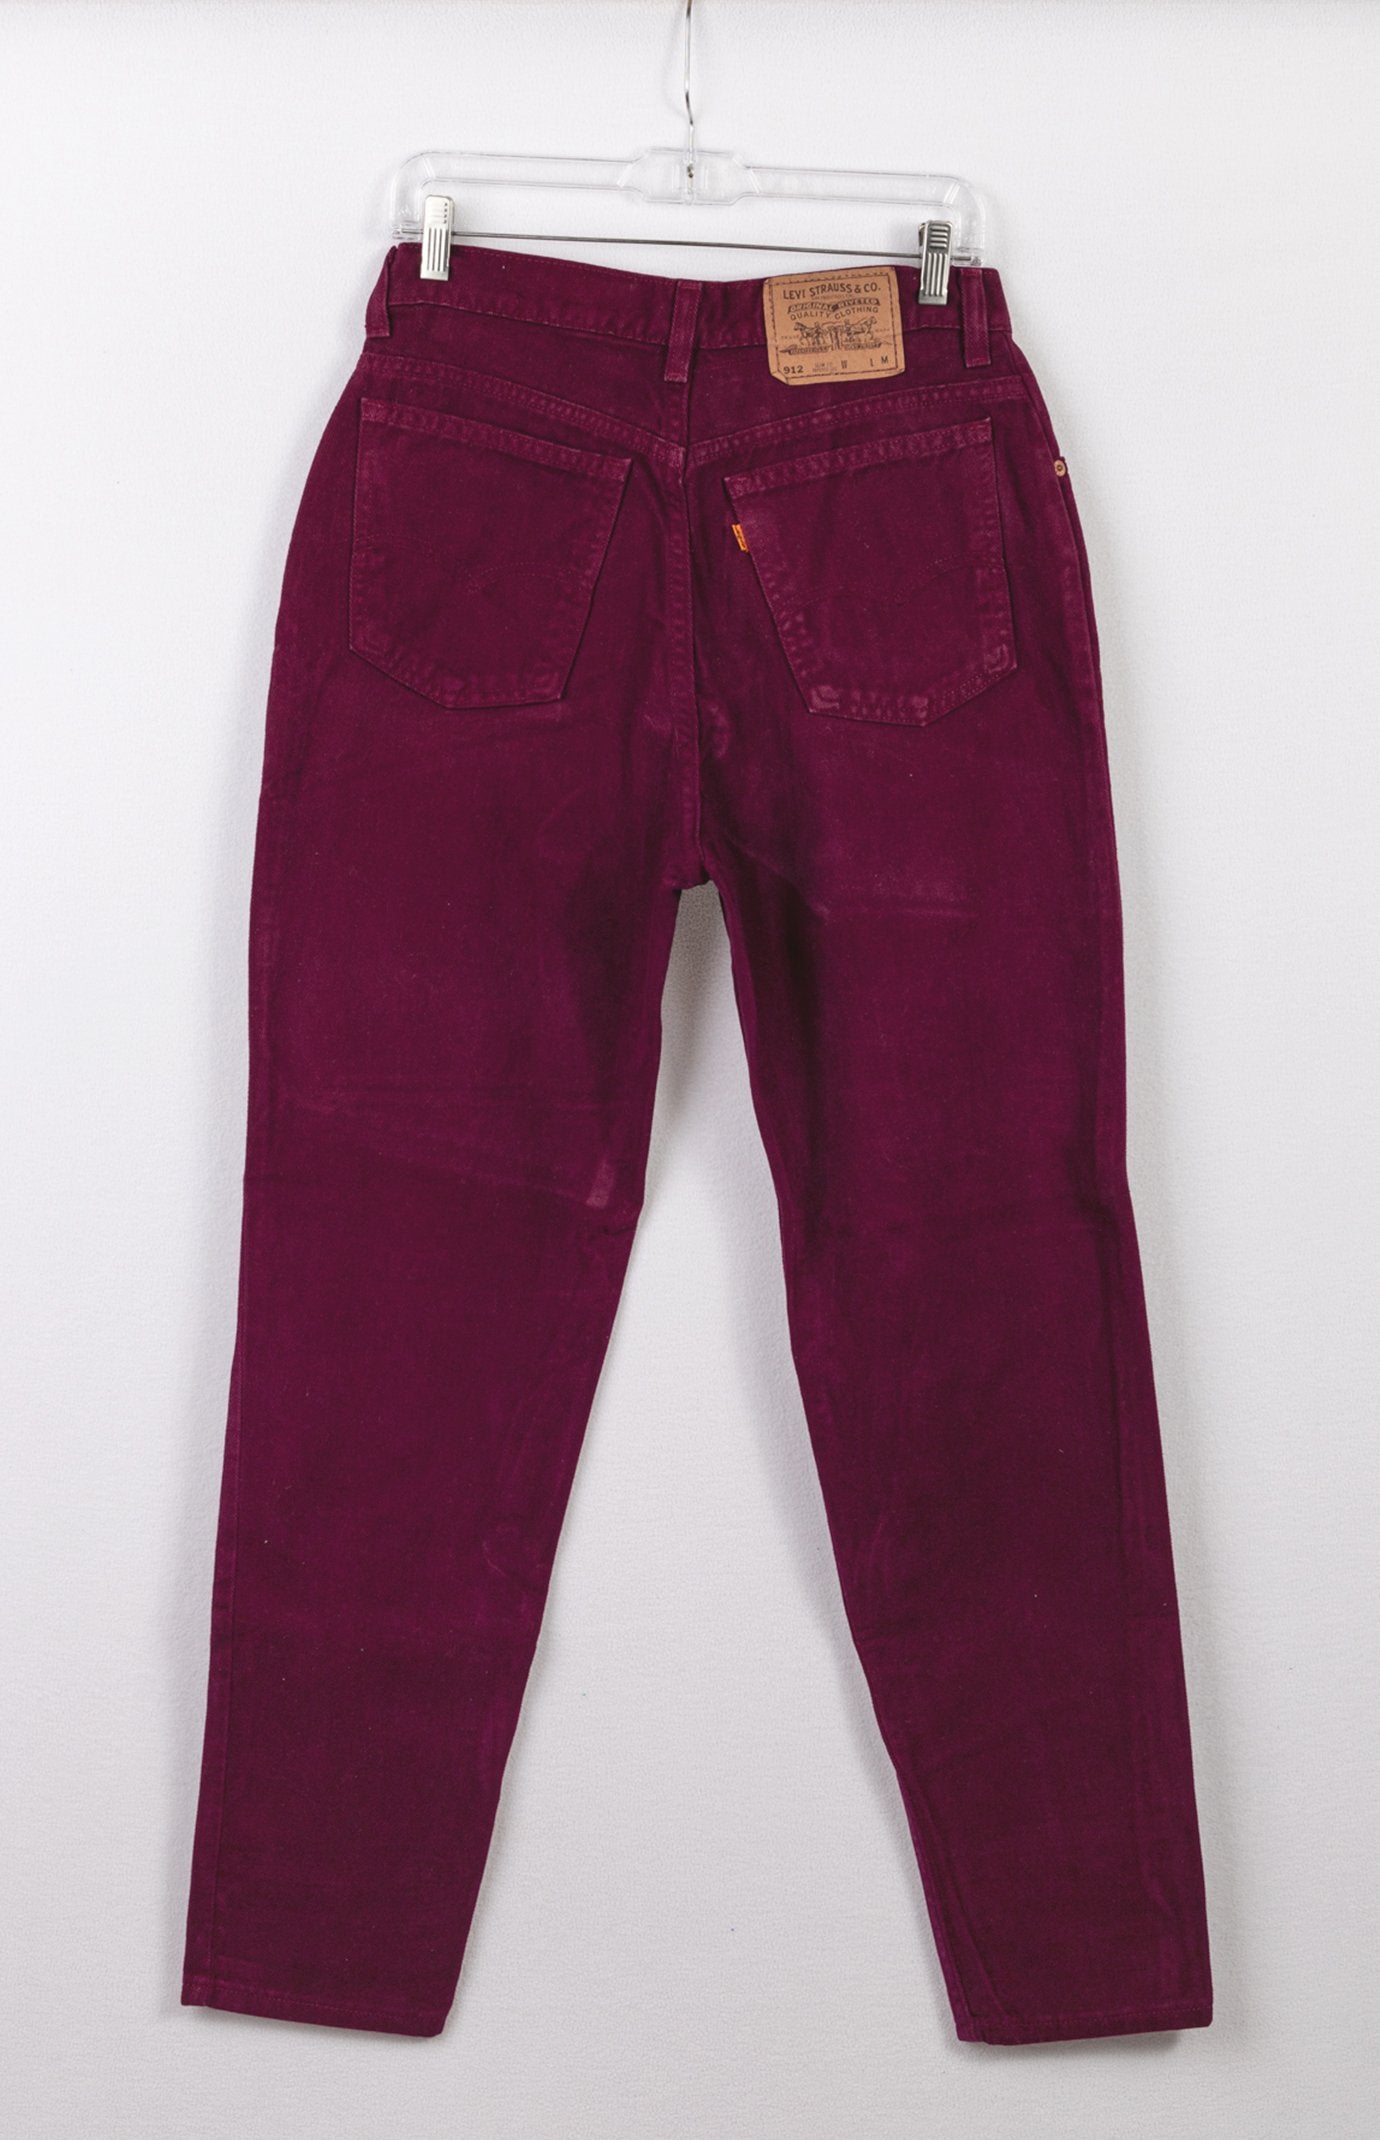 Levi's 912 Jeans | Vintage Levis Jeans | Retro Denim – GOAT Vintage